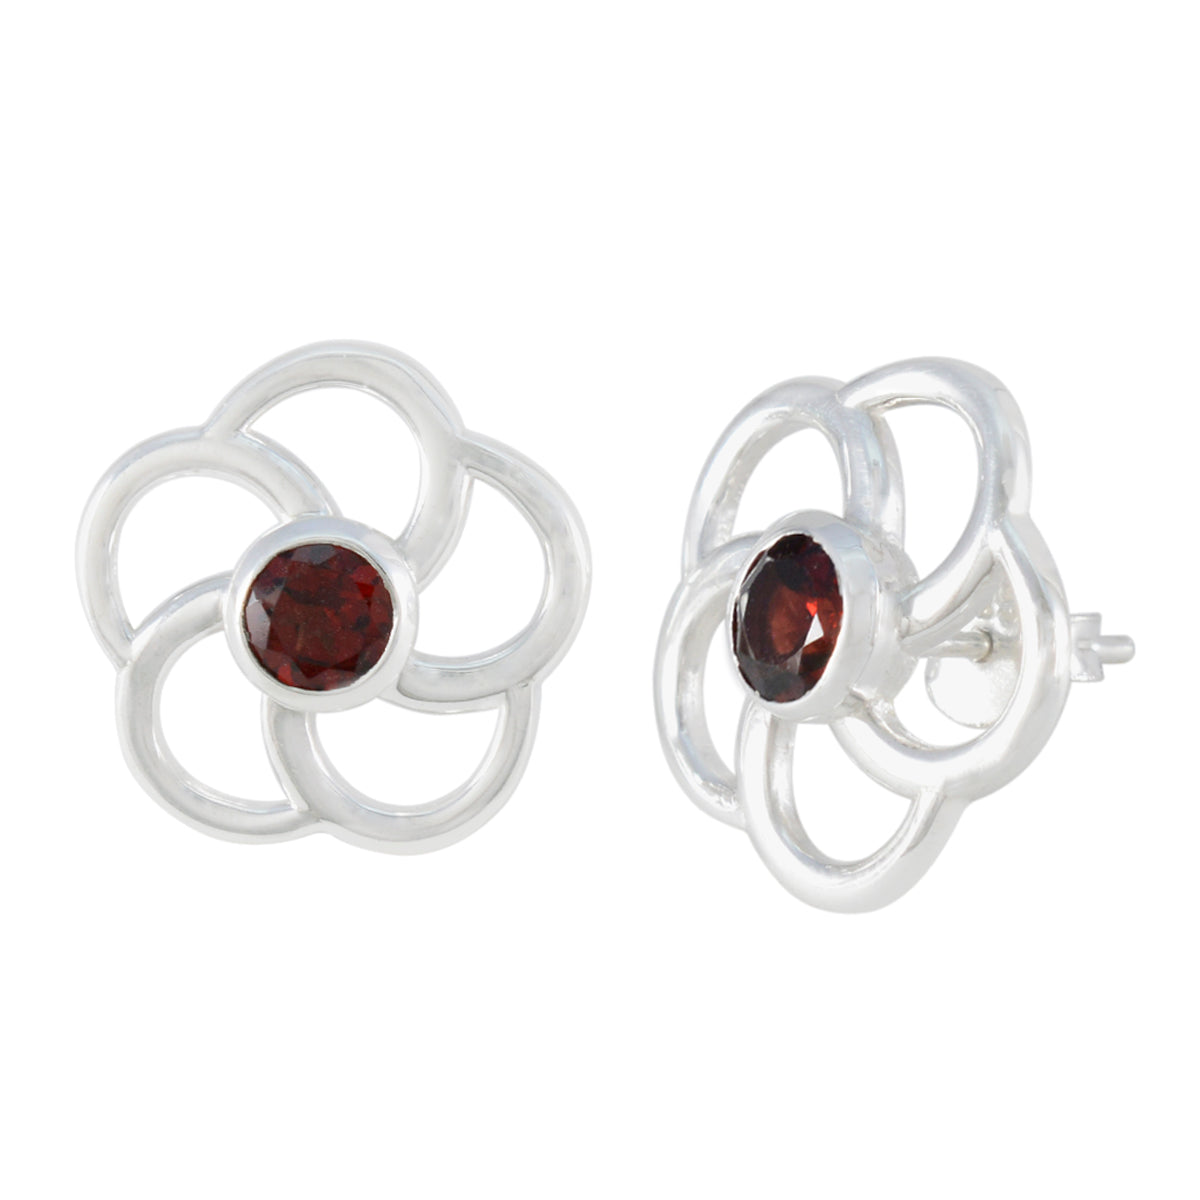 Riyo Einfach Auf Dem Auge Sterling Silber Ohrring Für Femme Granat Ohrring Lünette Fassung Rot Ohrring Ohrstecker